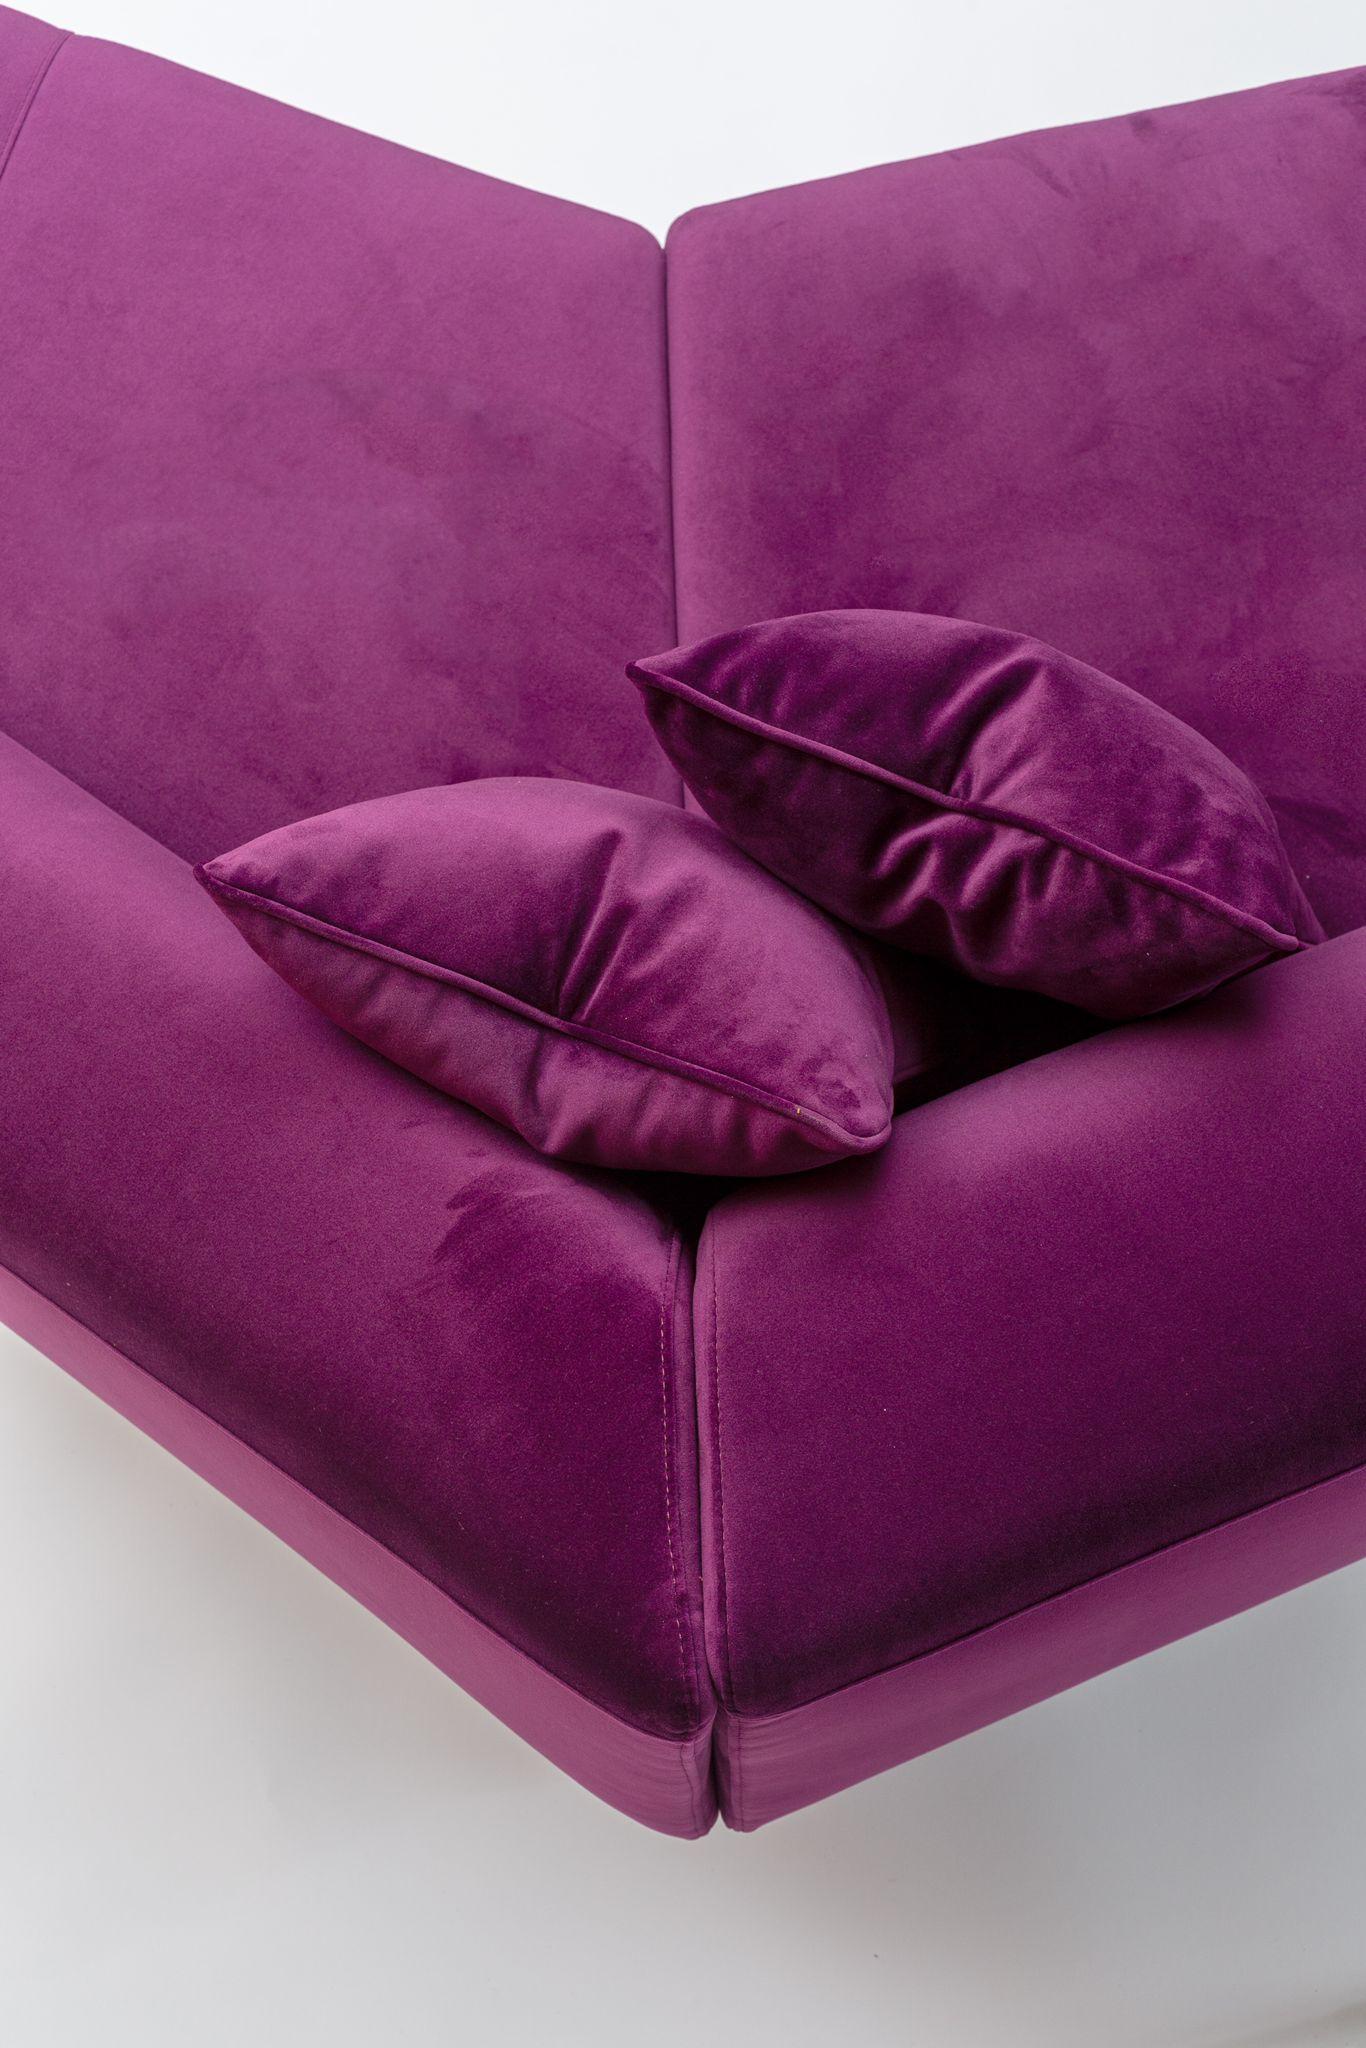 Modern Contemporary Modular Sofa Settee Velvet Geometric For Sale